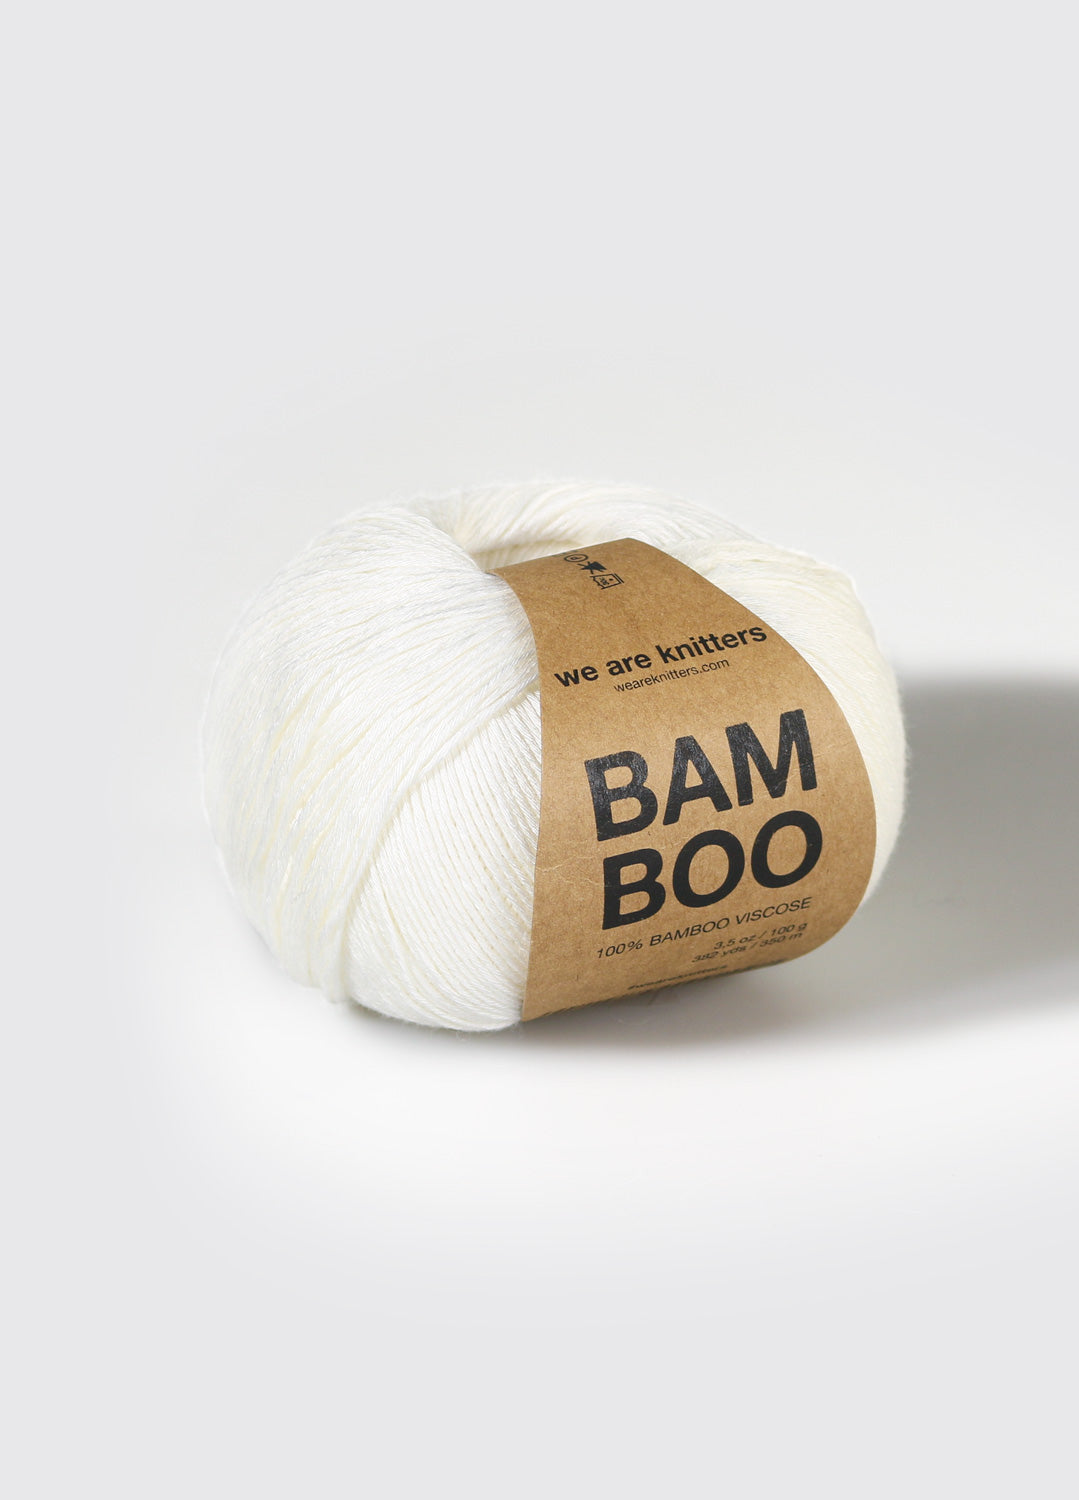 Knitting Yarn 100% Bamboo Worsted Aran 100g Ball Bamboo Yarn for